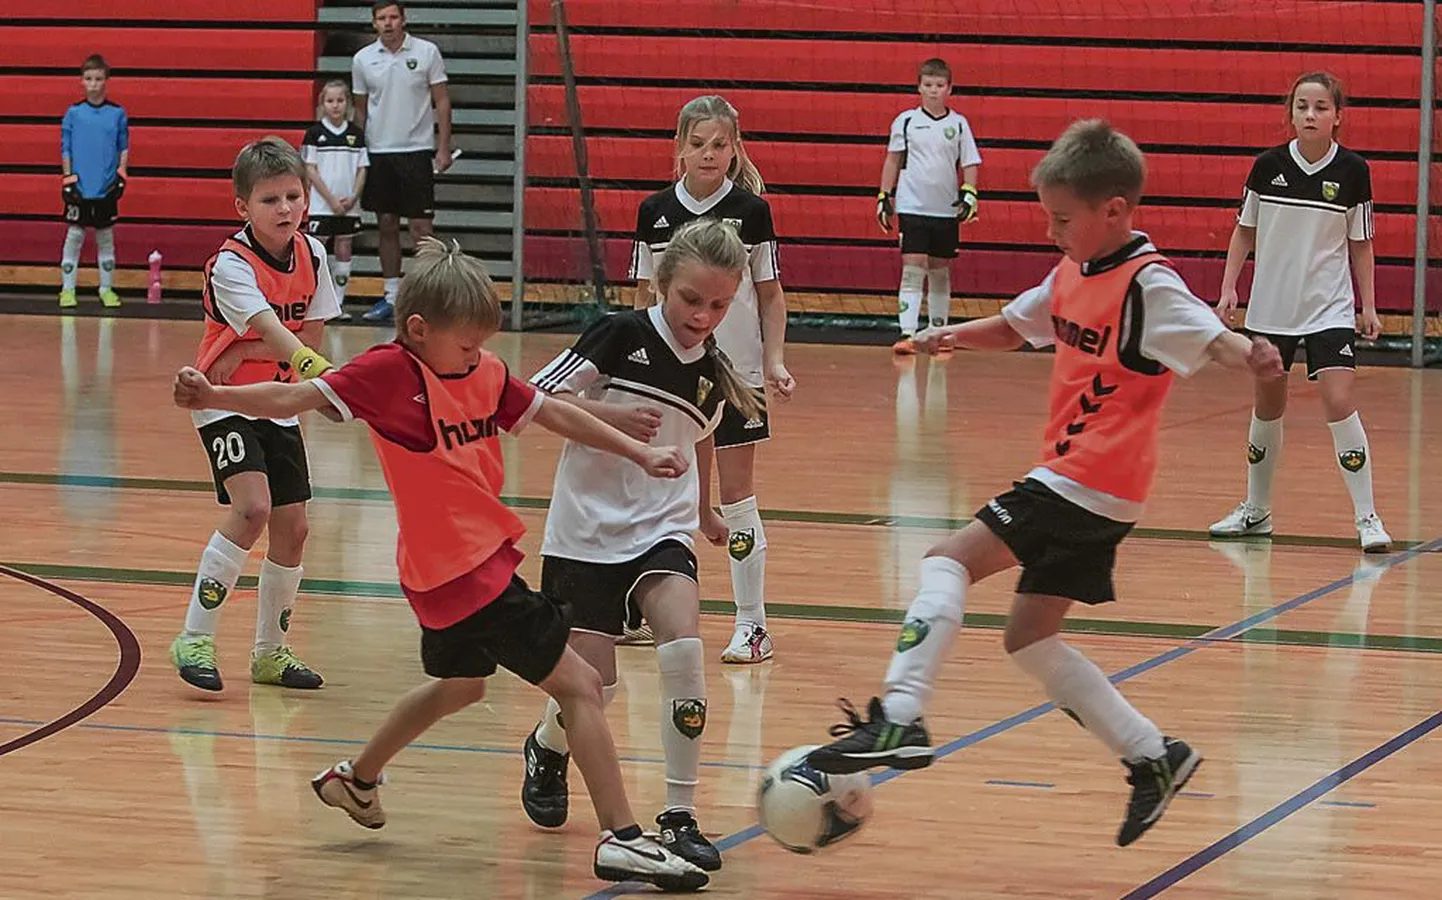 Võistkondlikel pallimängualadel on tervisekontroll kohustuslik. Pildil noored Pärnu jalgpallurid.